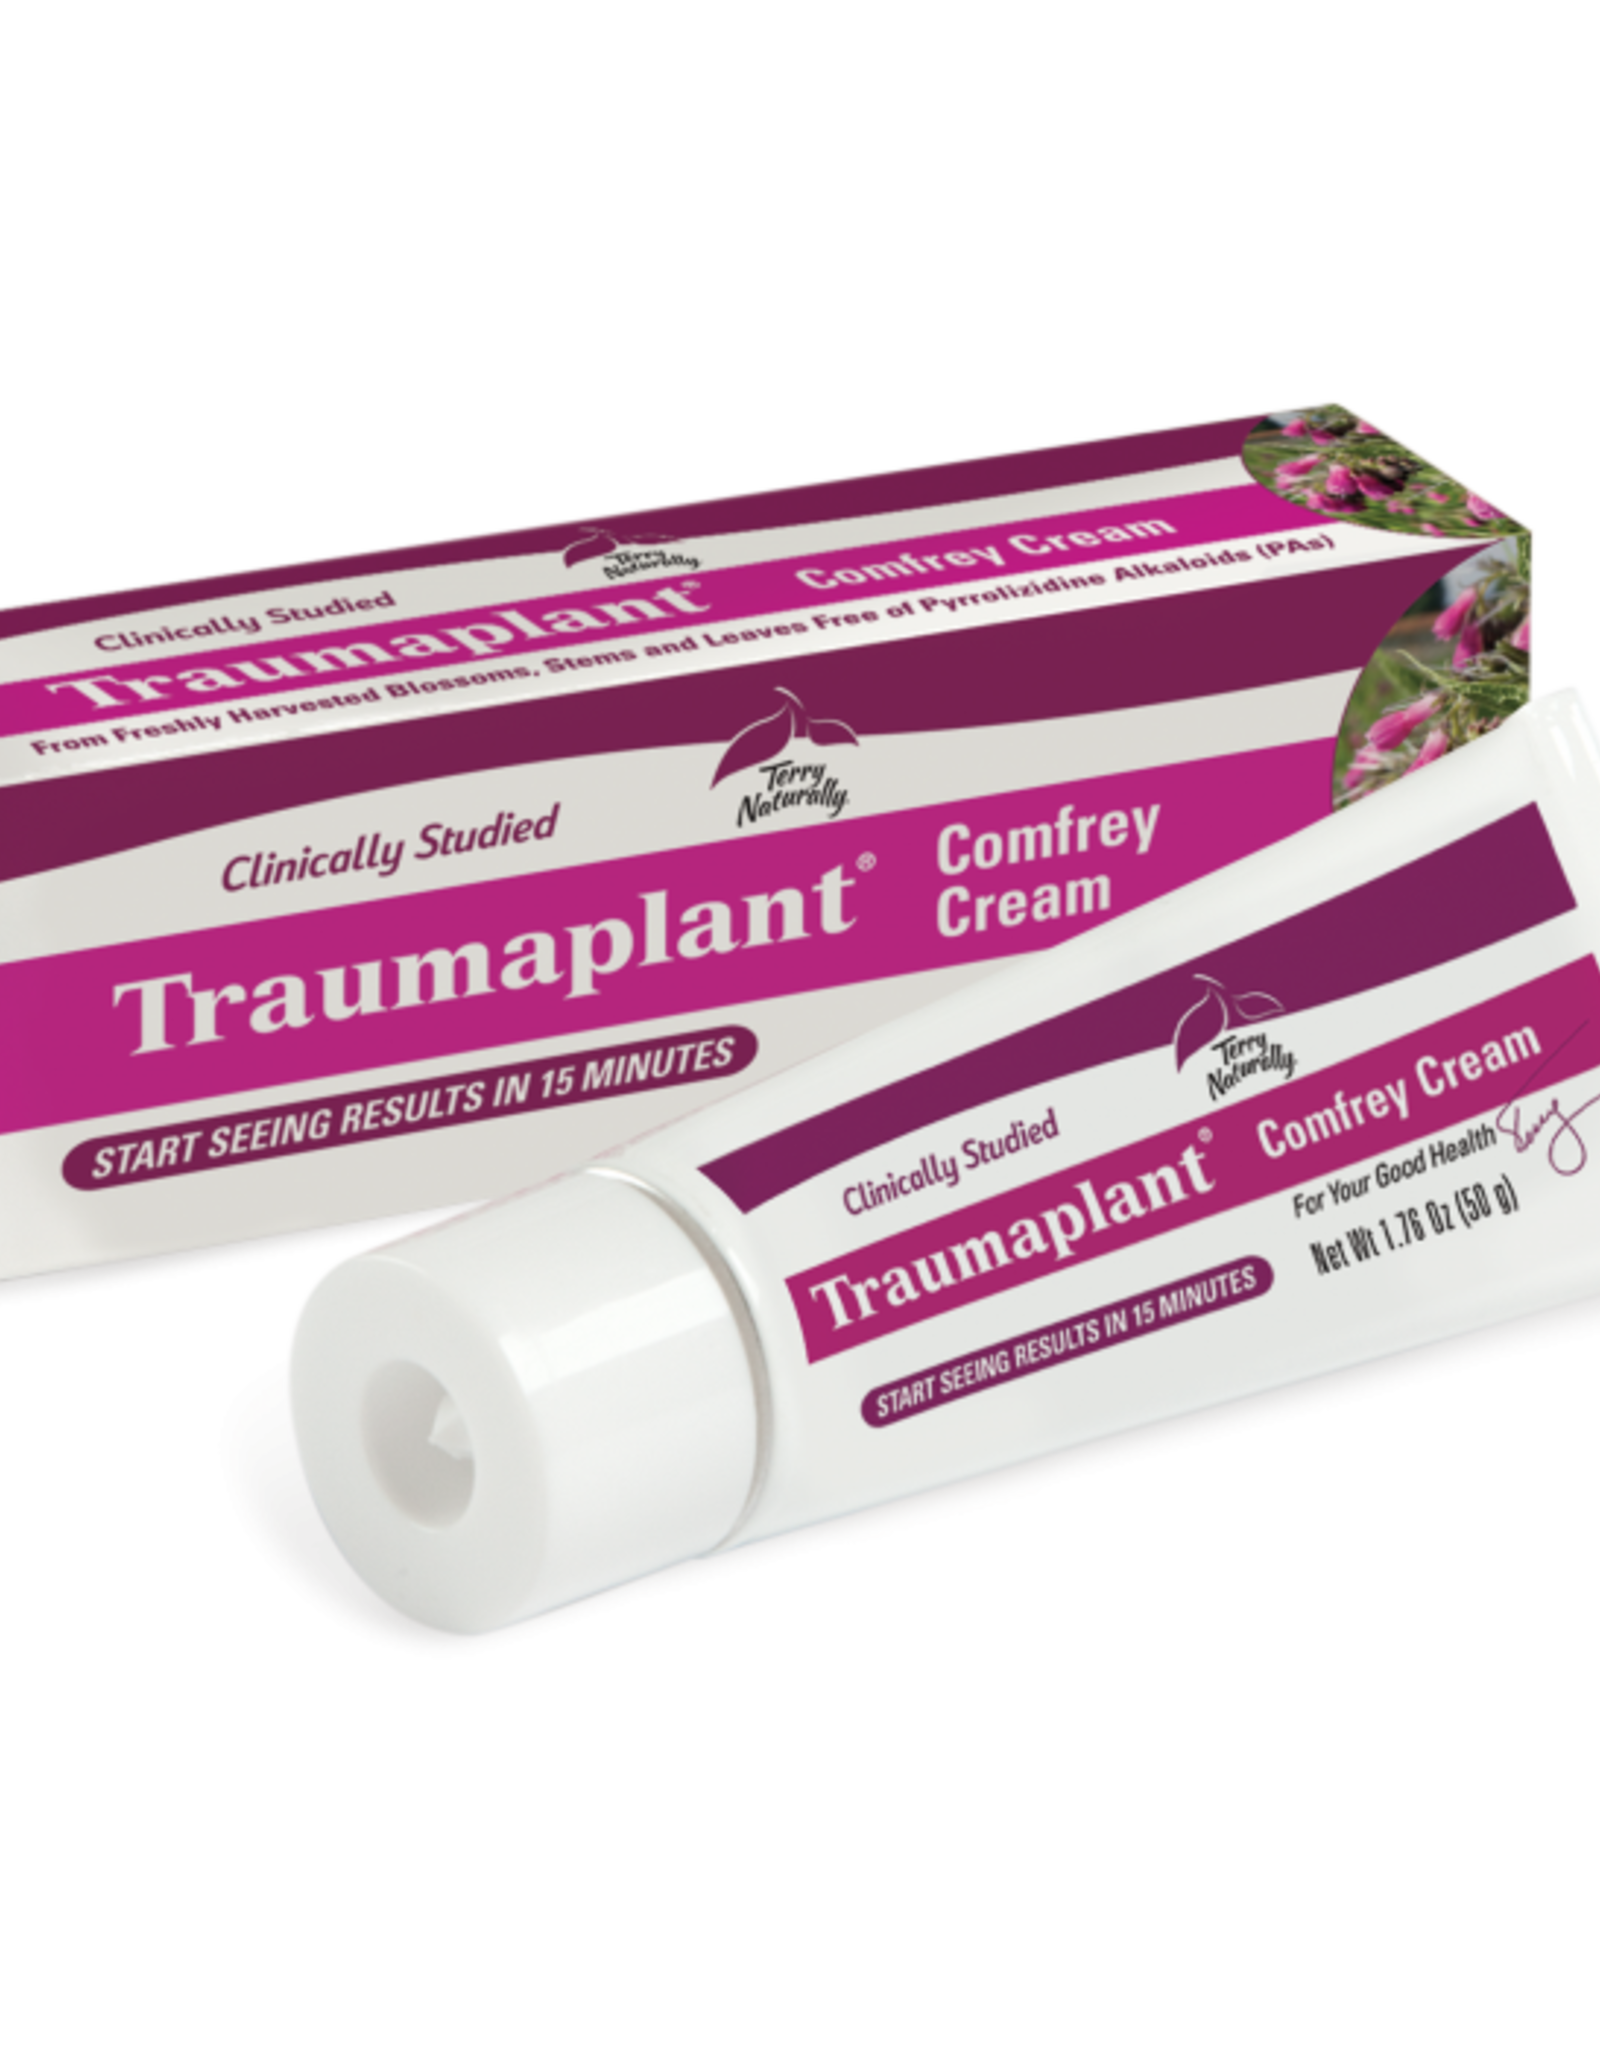 Terry Naturally Traumaplant Comfrey Cream - 1.76oz